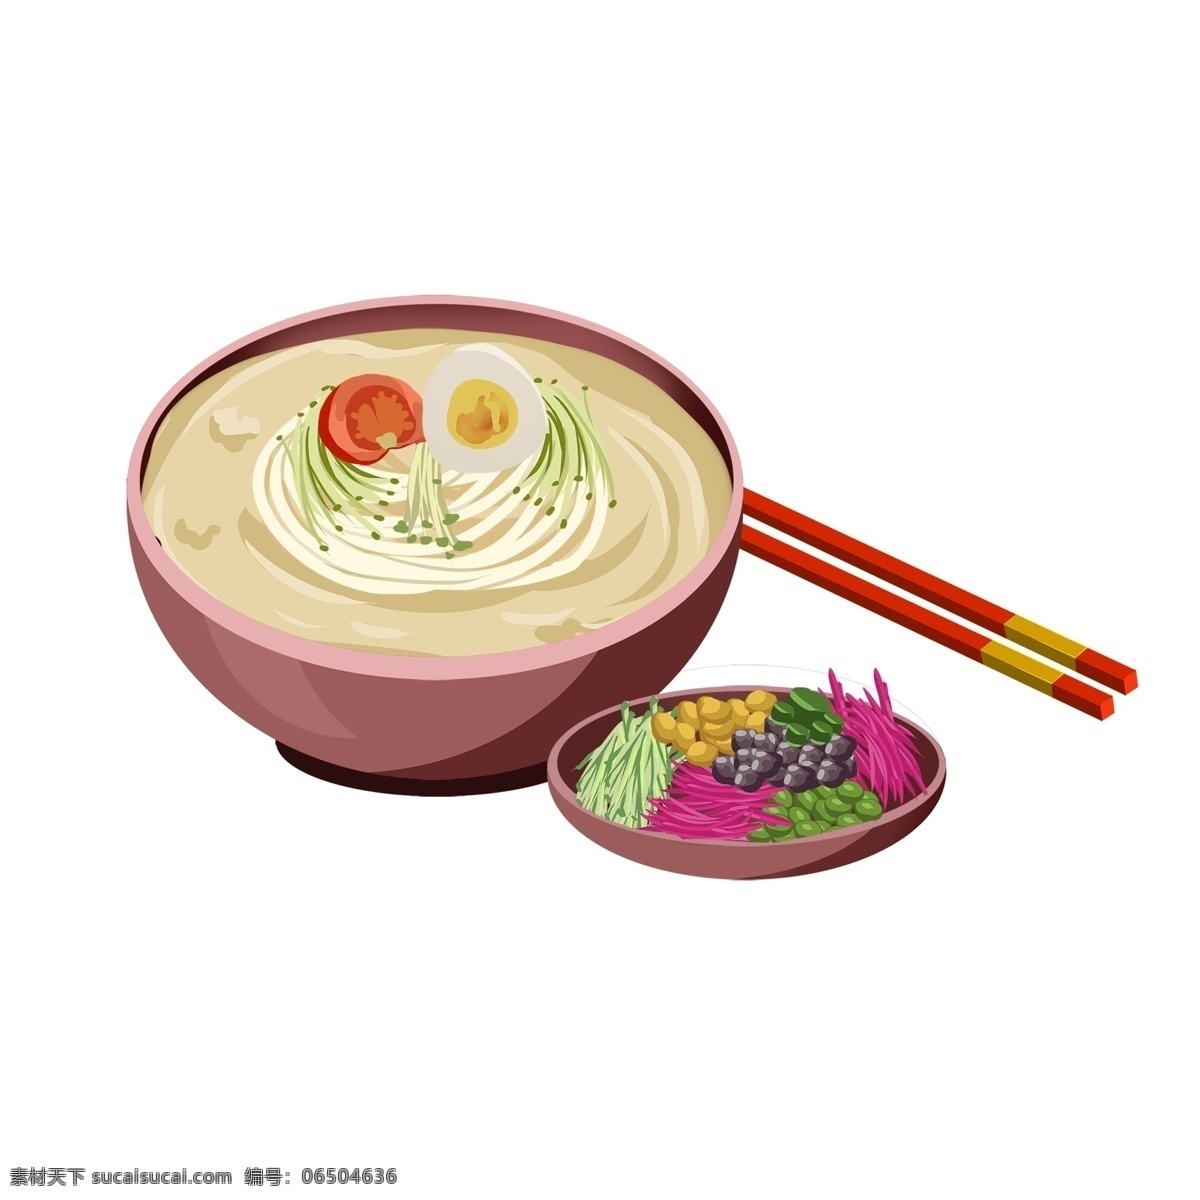 美食 面条 碗 筷子 鸡蛋 热 食 矢量 手绘 卡通 食物 卡通食物 餐饮素材 小菜 汤面 手绘风